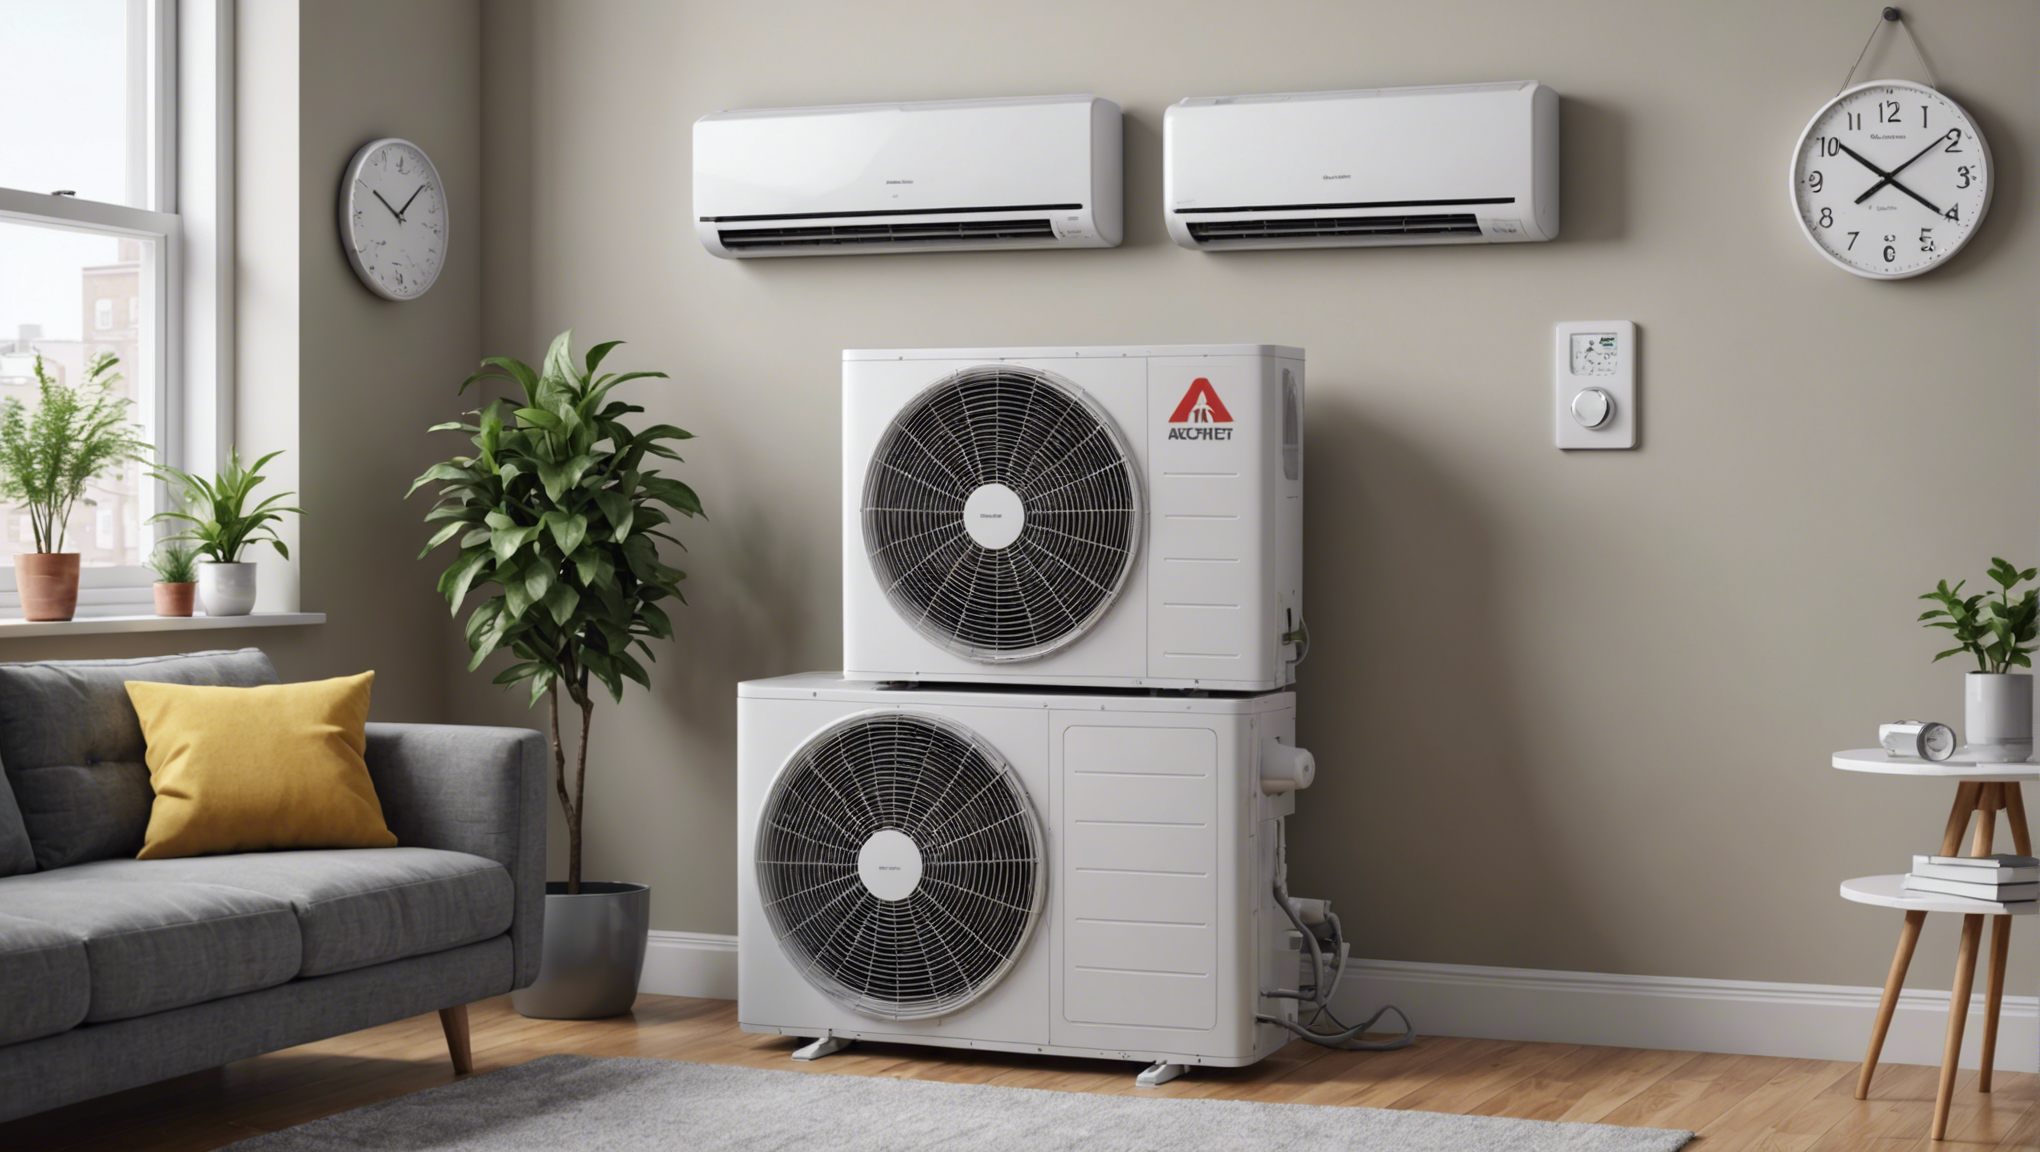 découvrez nos conseils pour bien choisir sa climatisation d'appartement et profiter d'un confort thermique optimal toute l'année.